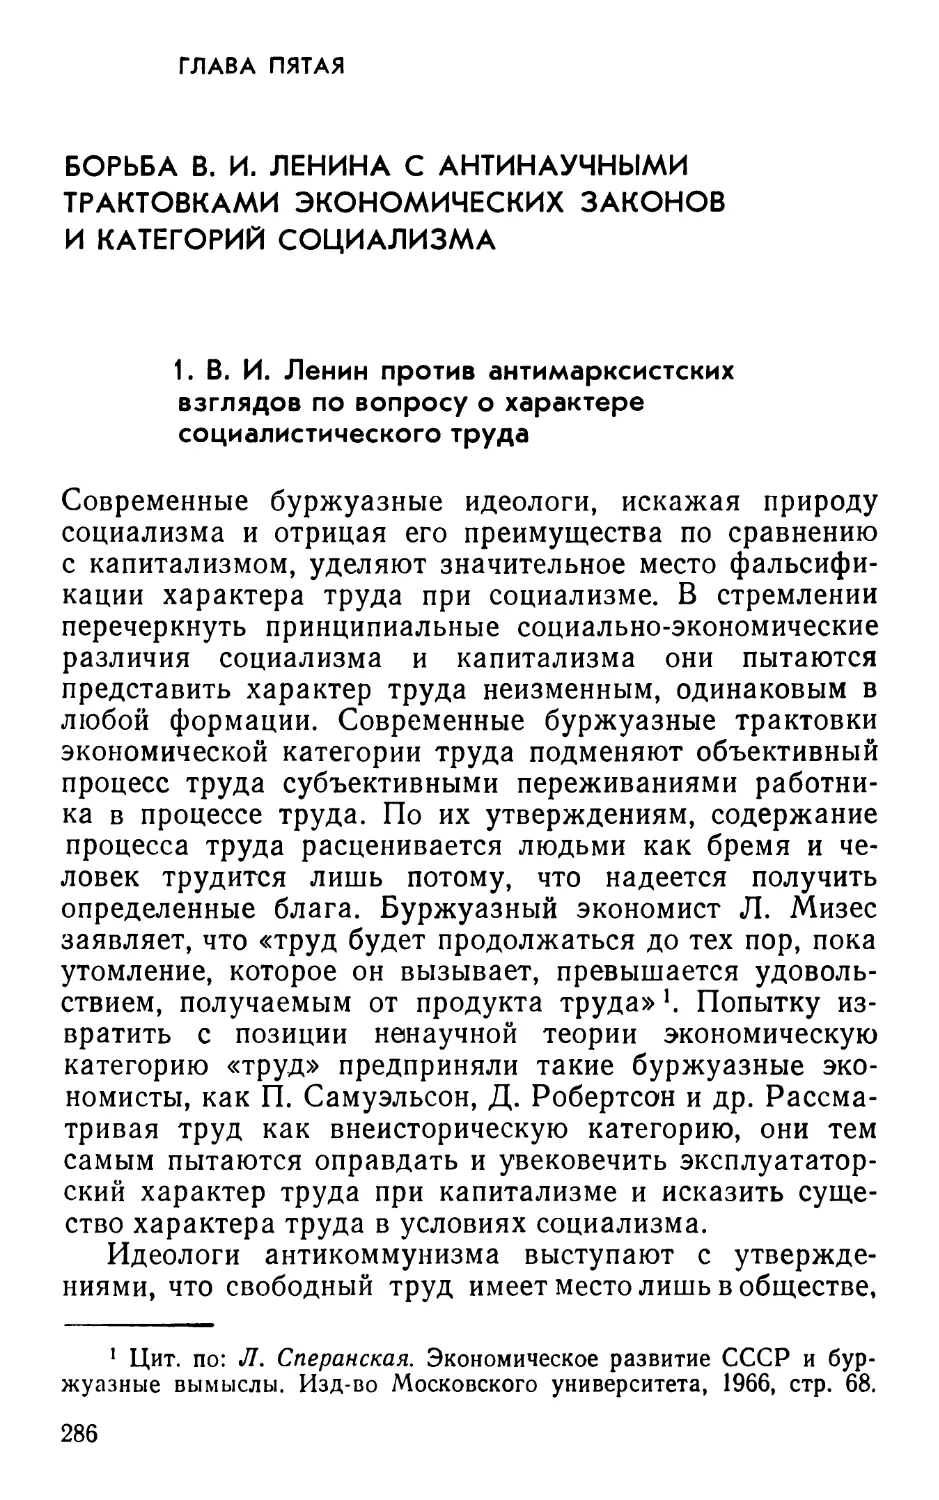 Глава пятая. Борьба В.И.Ленина с антинаучными трактовками экономических законов и категорий социализма